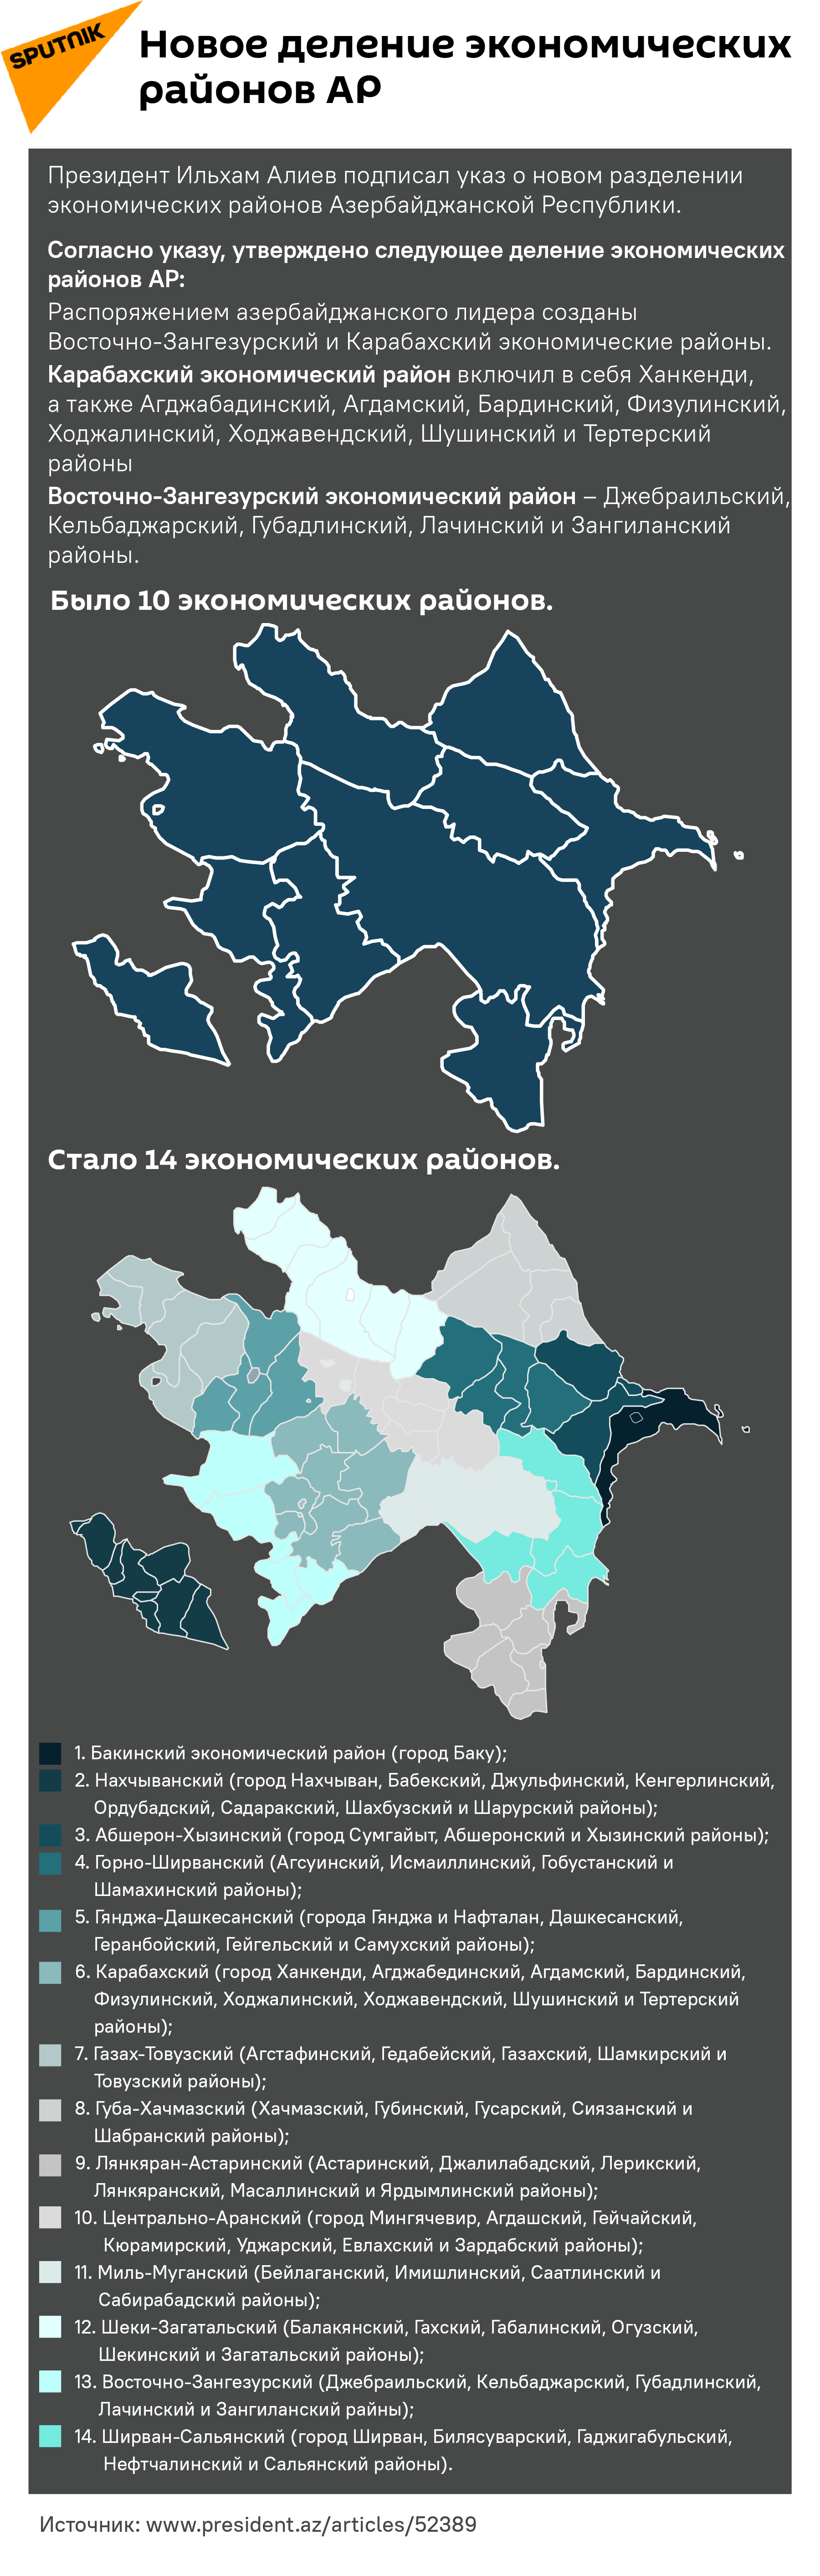 Инфографика: Новое деление экономических районов АР - Sputnik Азербайджан, 1920, 25.07.2021